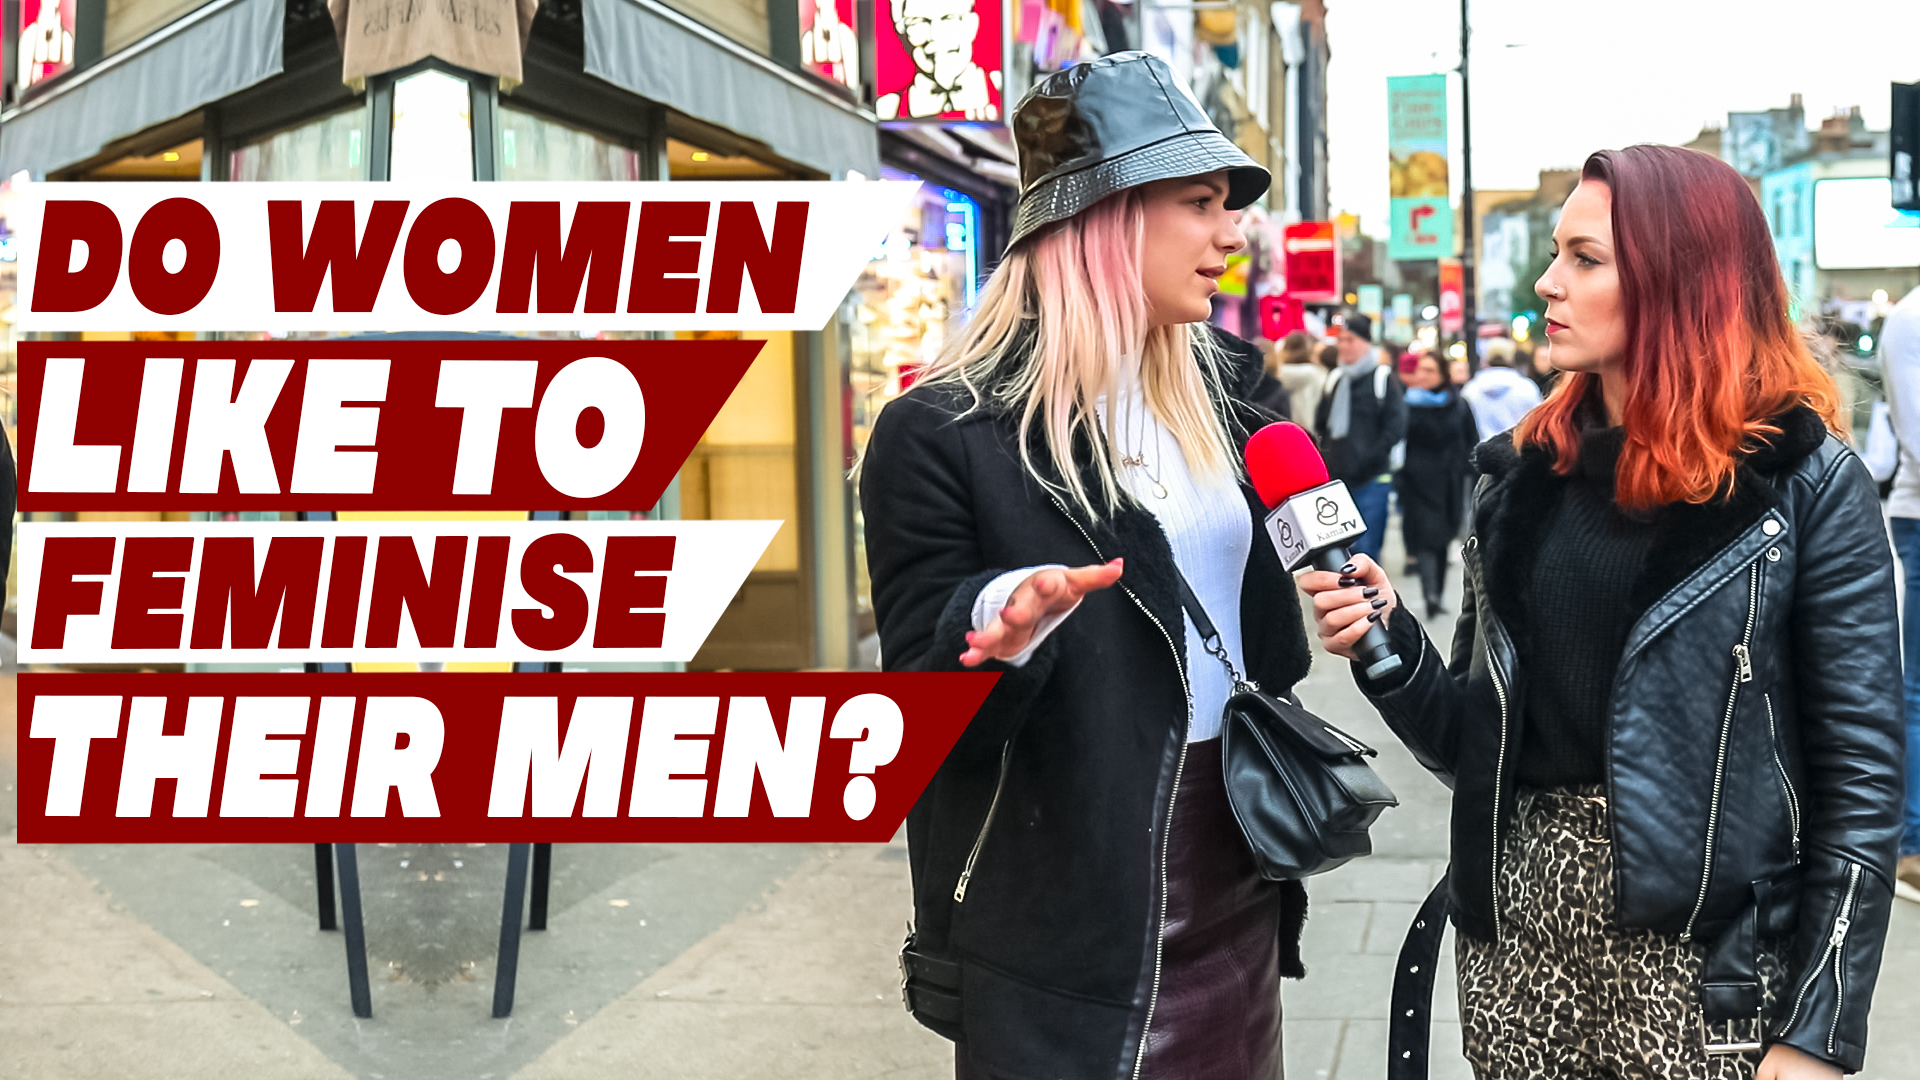 Do women like to feminise their men?